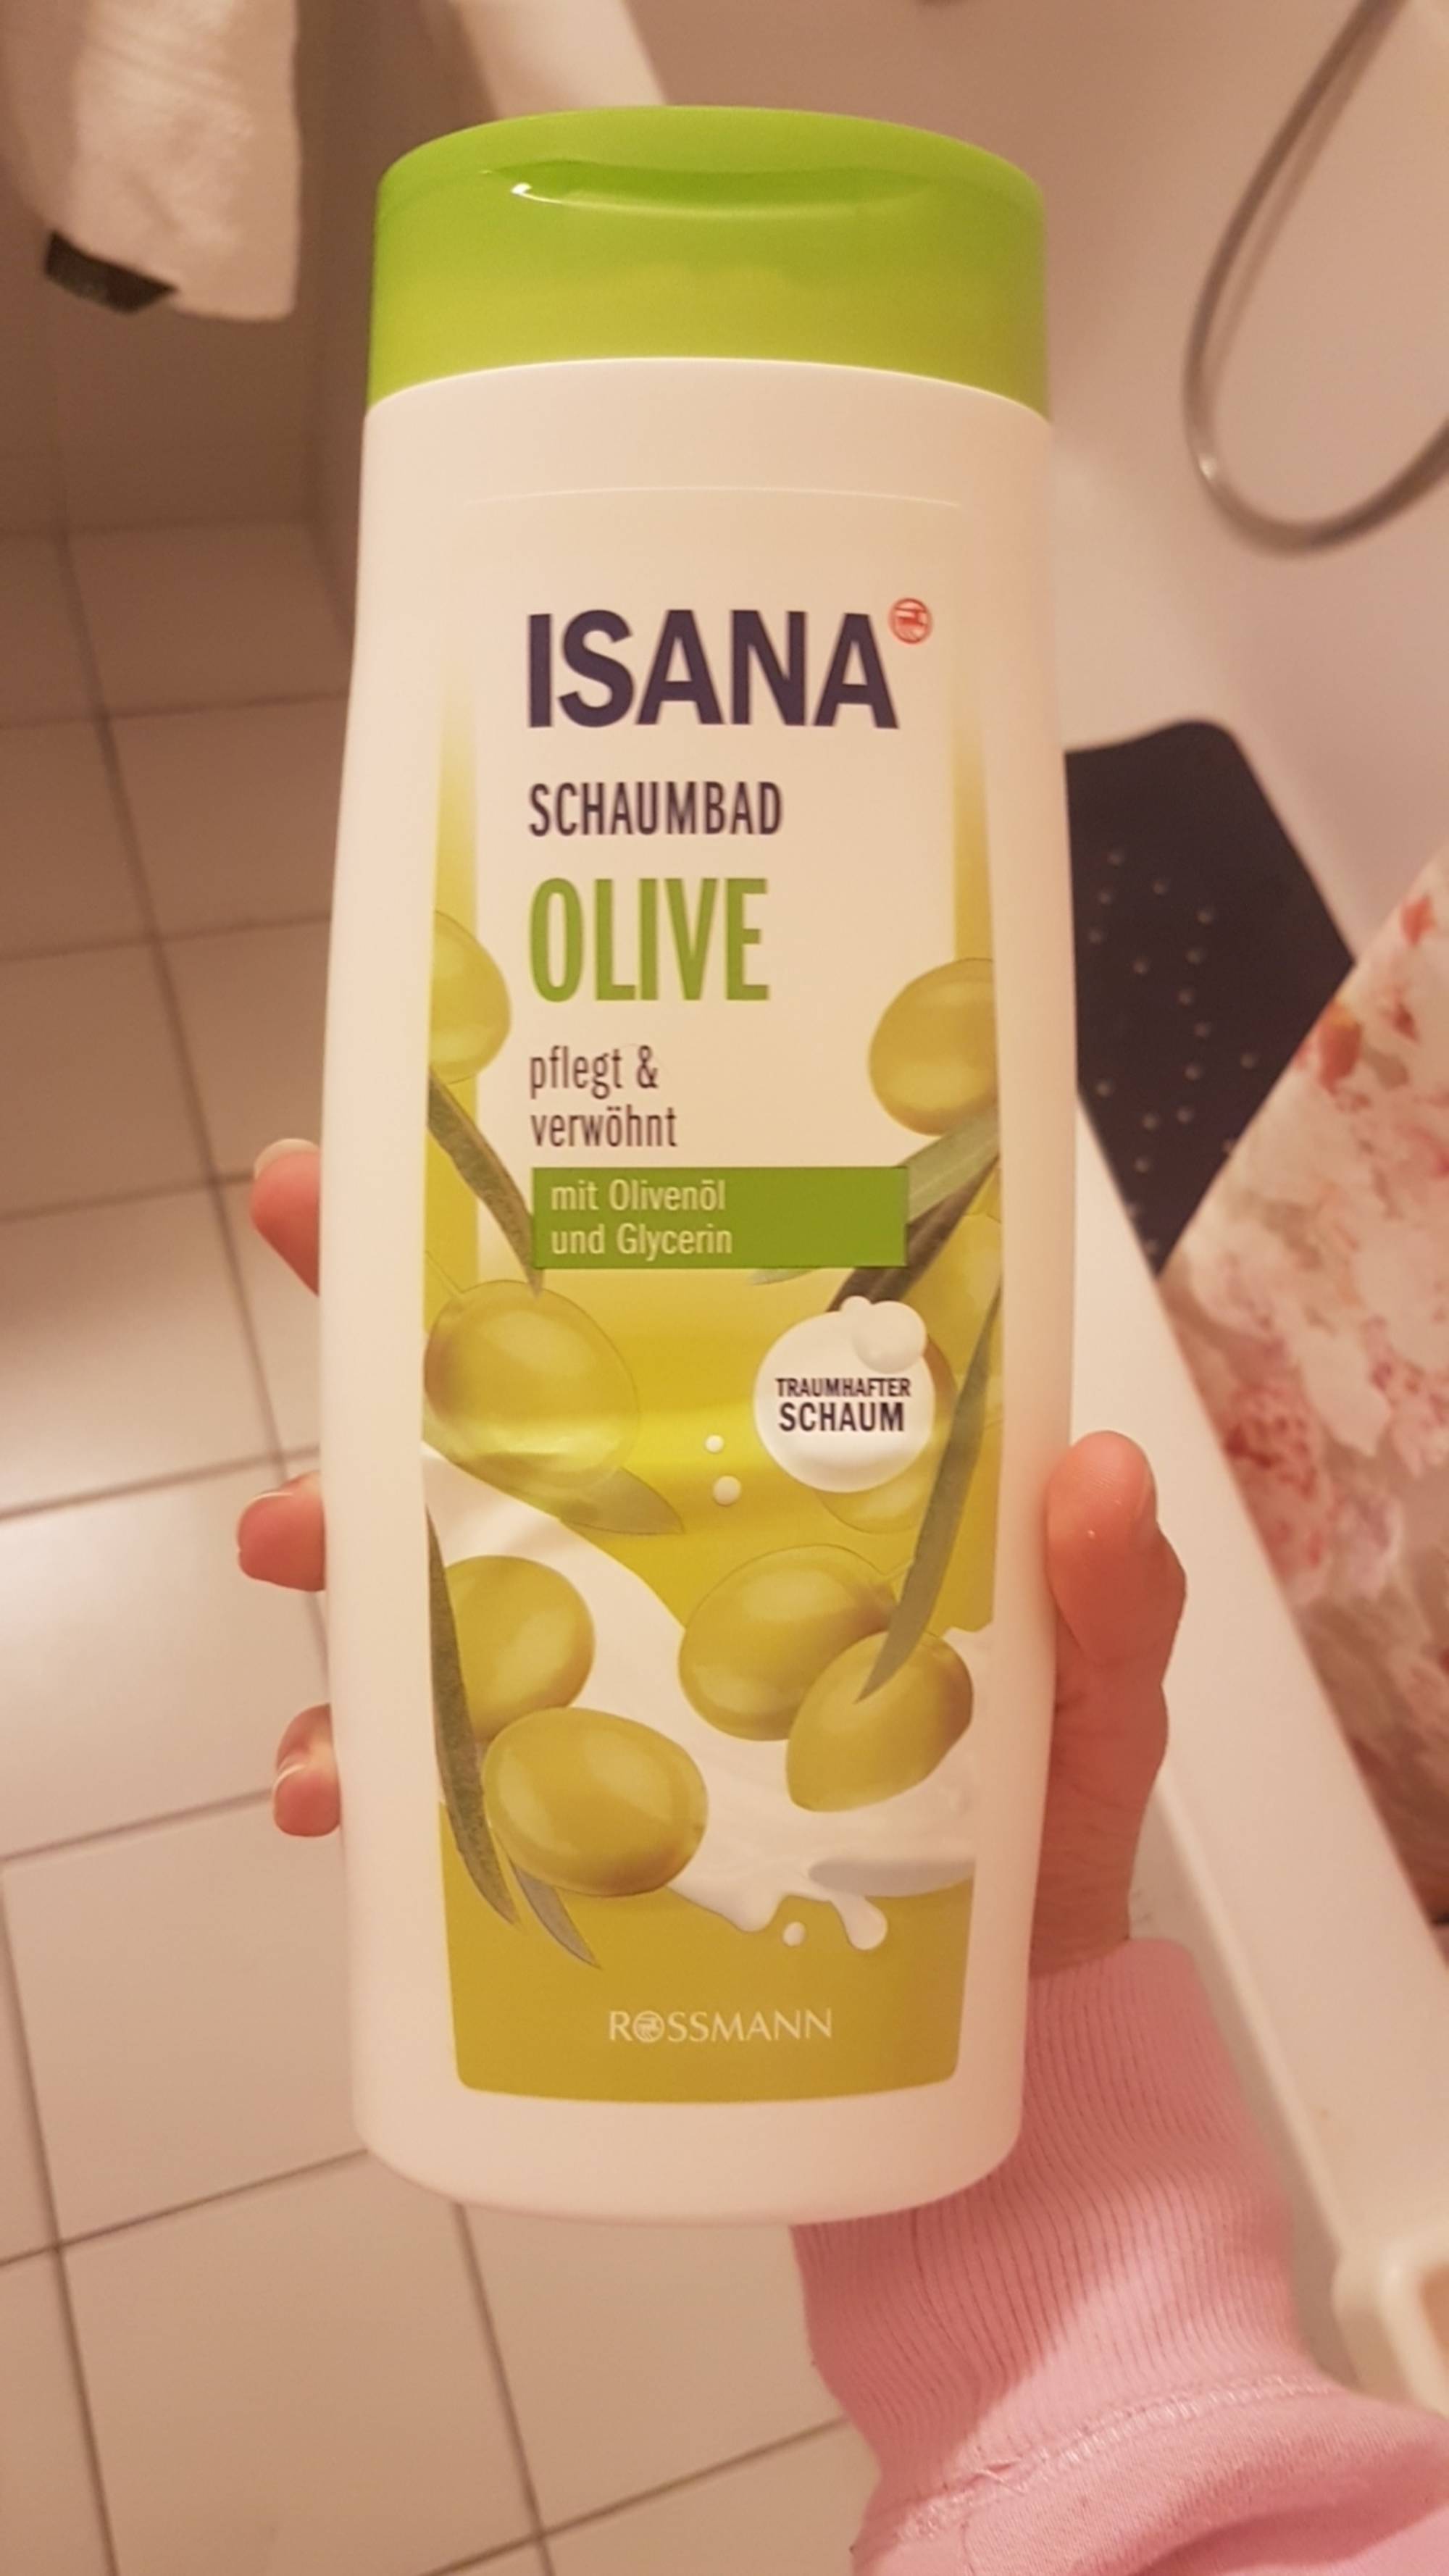 ISANA - Schaumbad olive